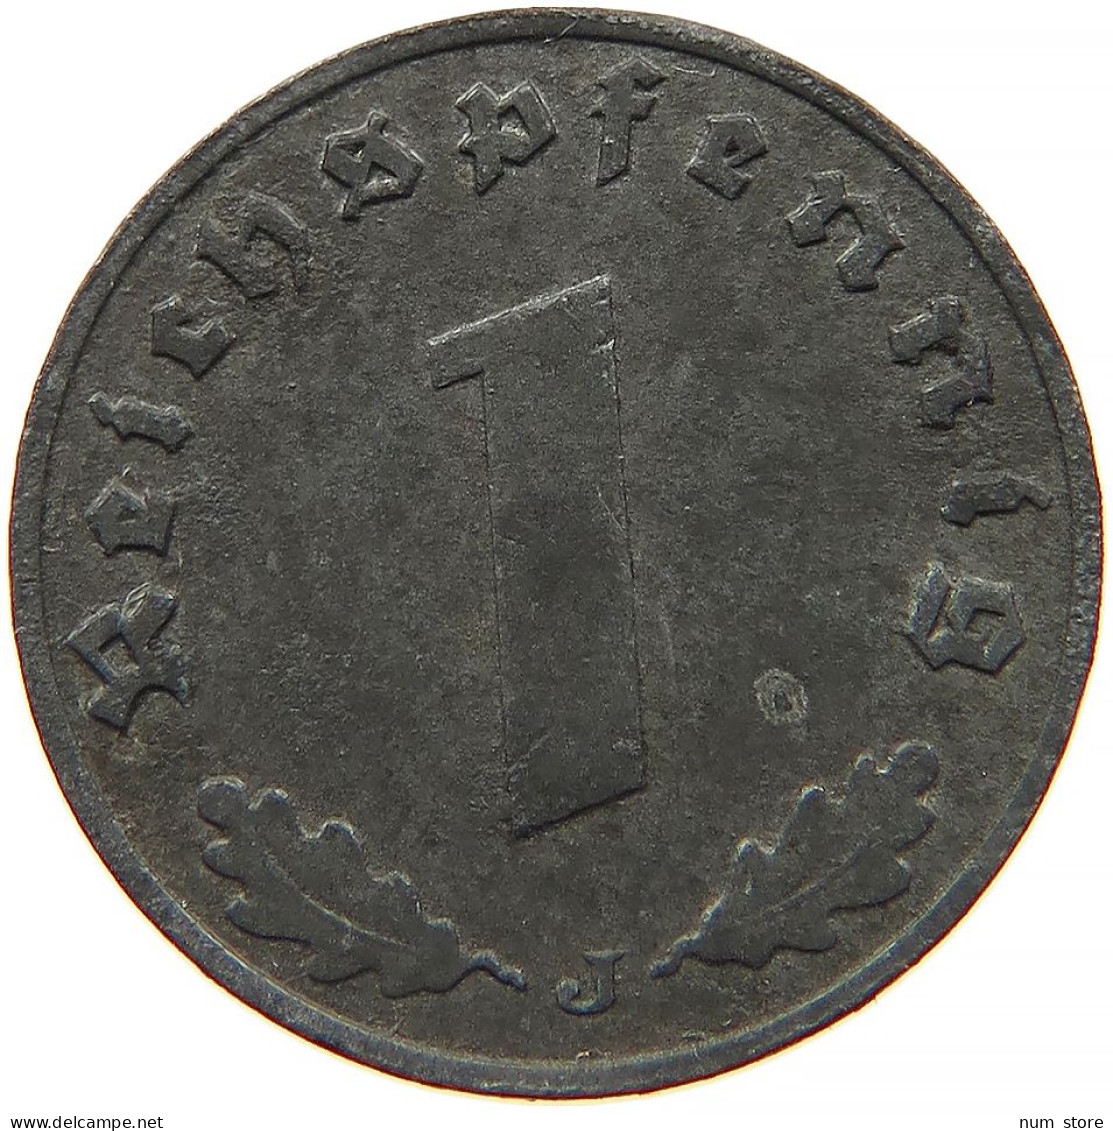 GERMANY 1 REICHSPFENNIG 1942 J #s091 0997 - 1 Reichspfennig